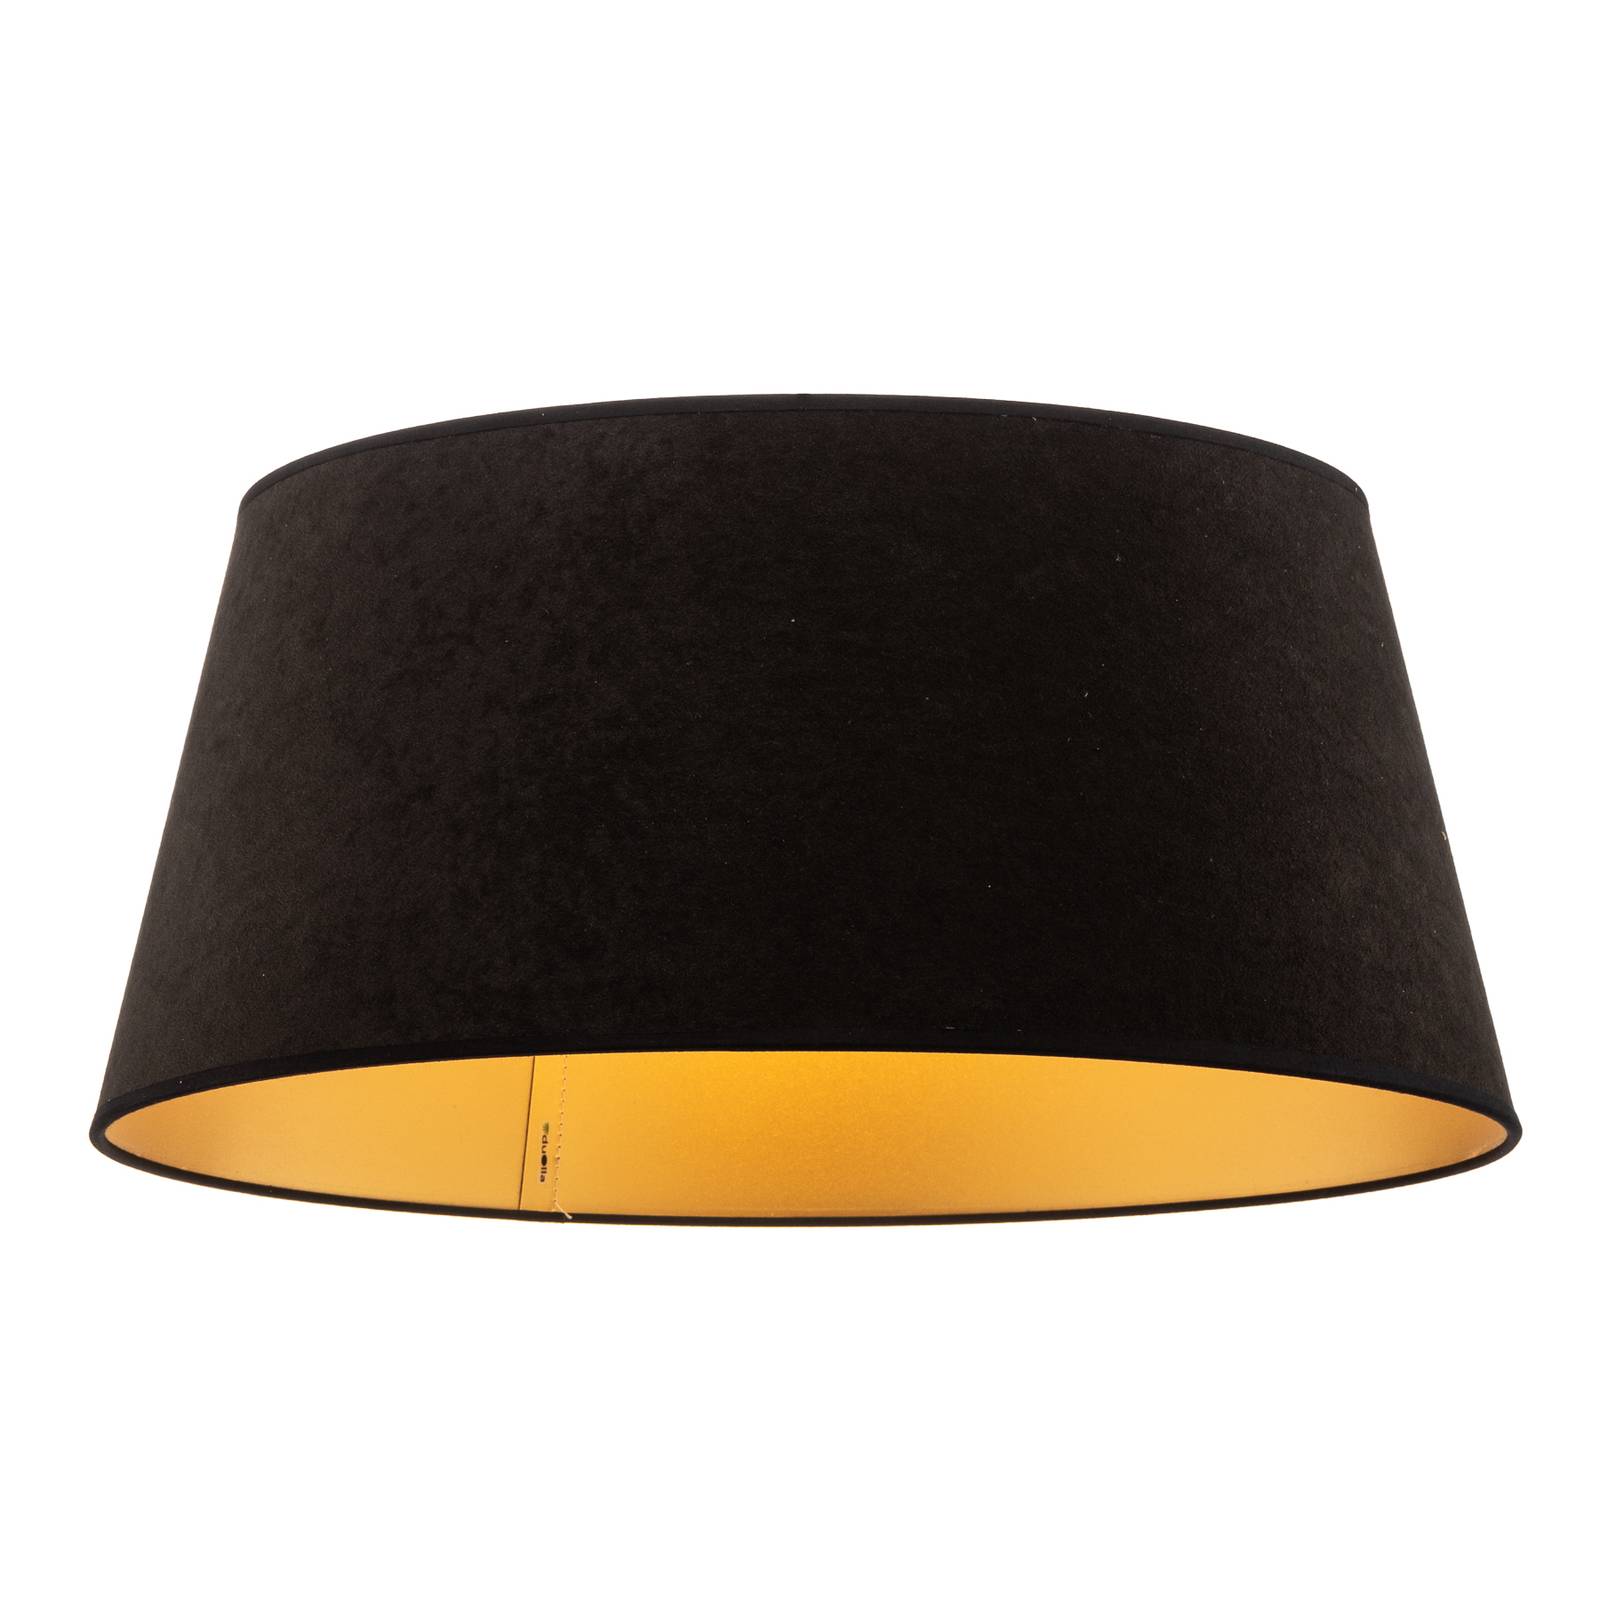 Duolla kúp alakú lámpaernyő magassága 22,5 cm, fekete/arany